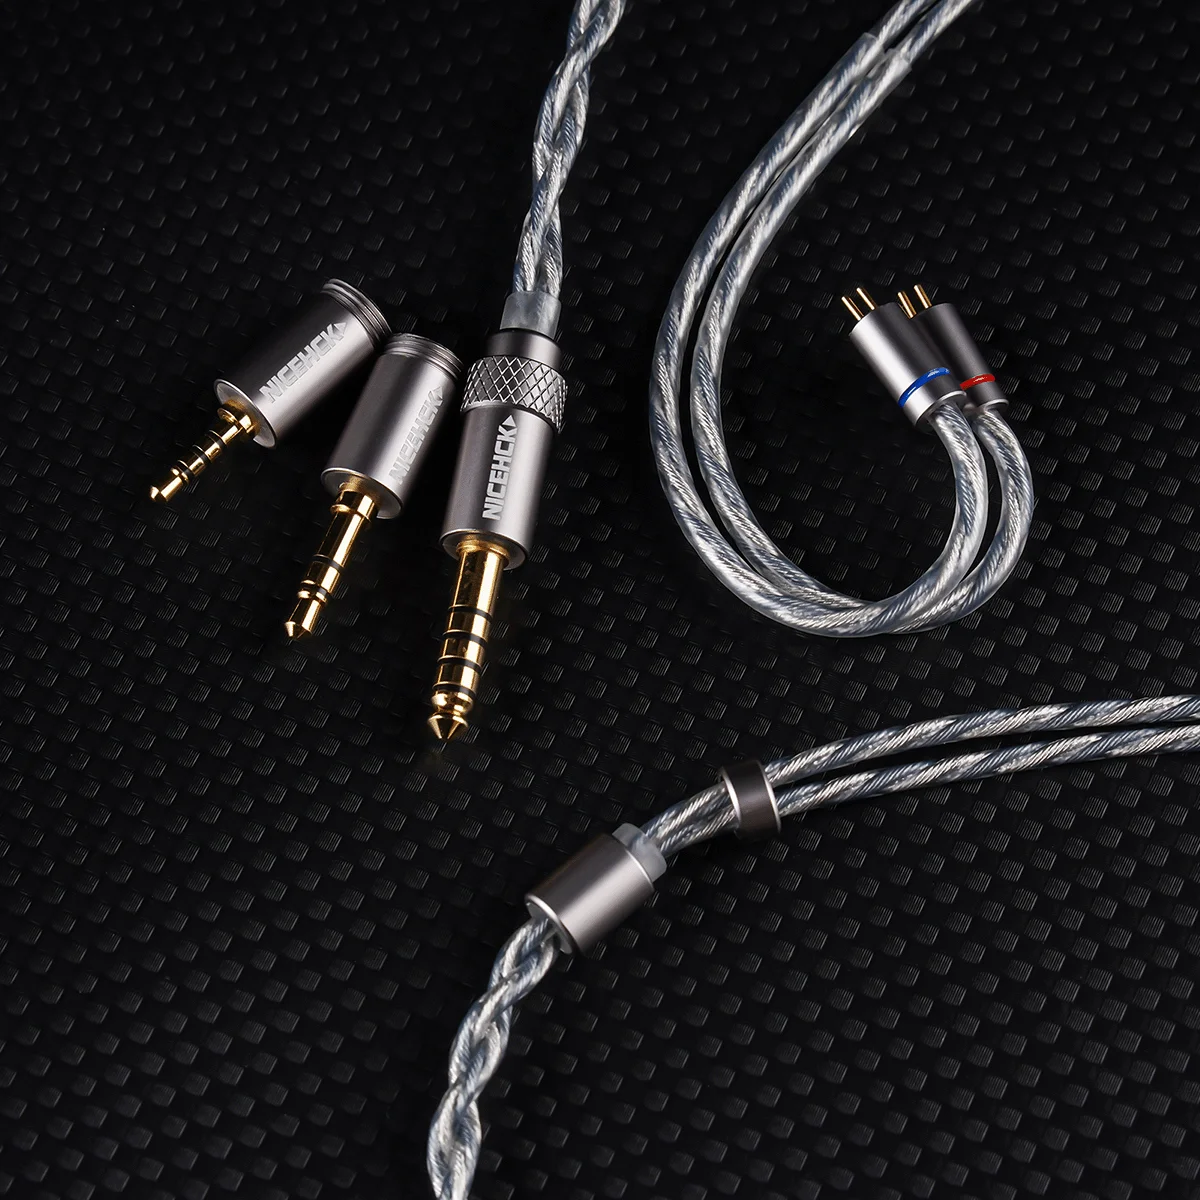 Nicehck blueluna stříbro pokovené OFC plochý 2póly hifi sluchátko aktualizovat IEM kabel s 3-in-1 odnímatelné woblery pro HIMALAYA  F1 pro